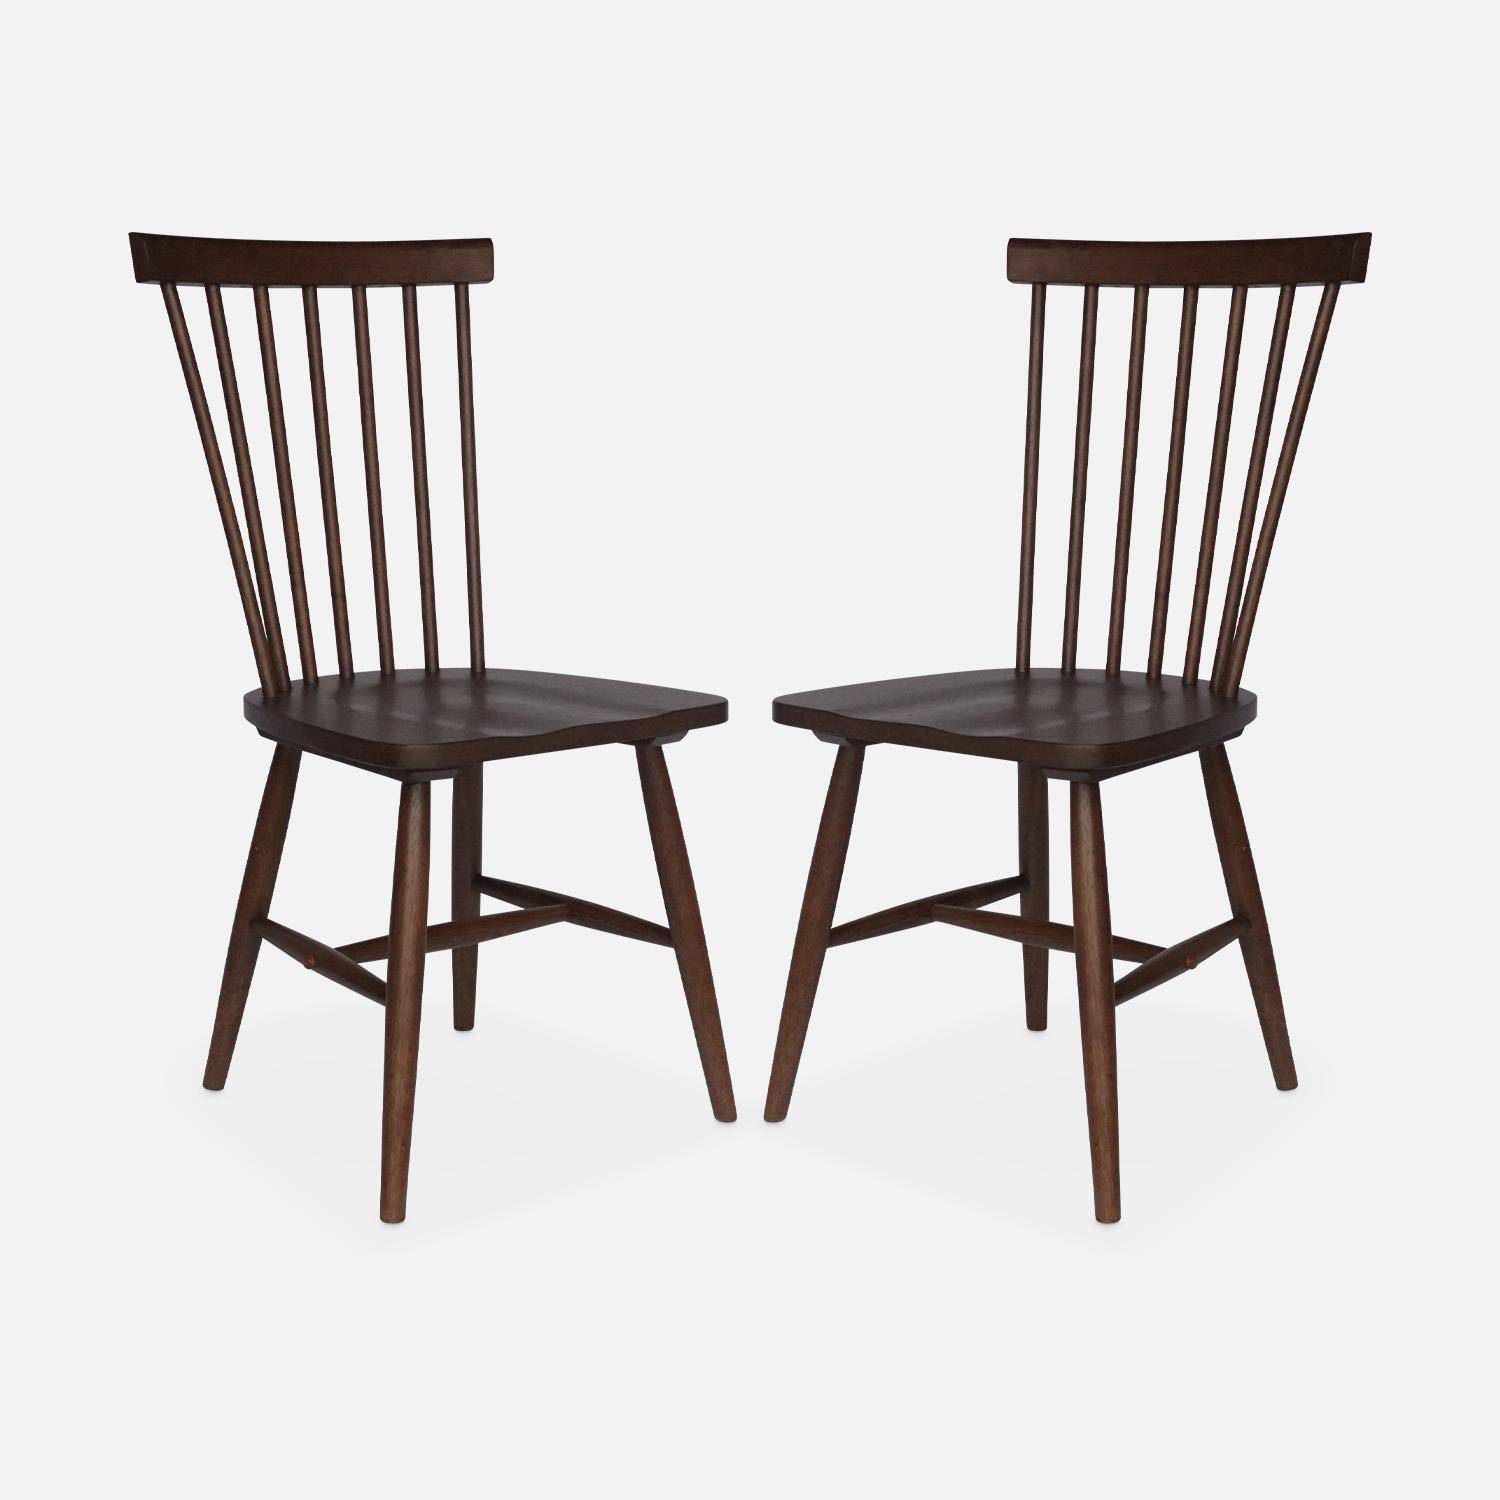 Conjunto de 2 cadeiras de nogueira com ripas de madeira de borracha, ROMIE, L 50,8 x P 44,2 x A 90cm. Photo5